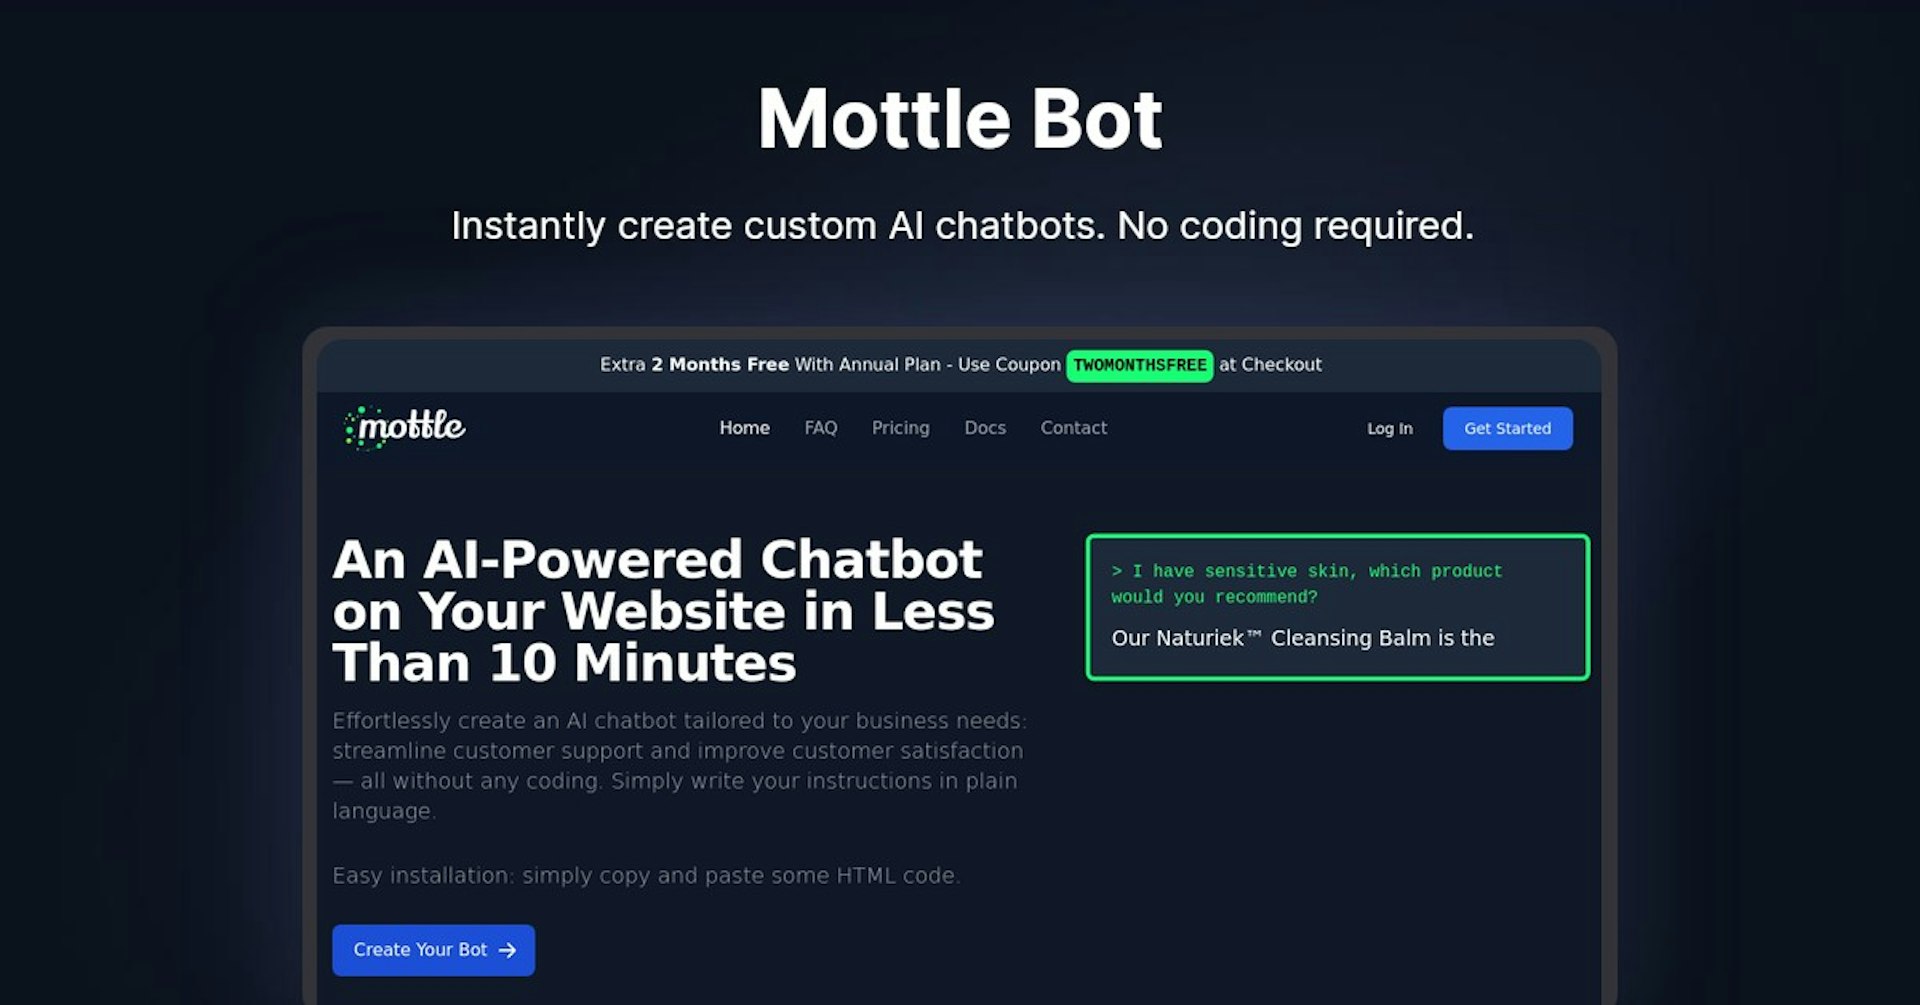 Mottle Bot